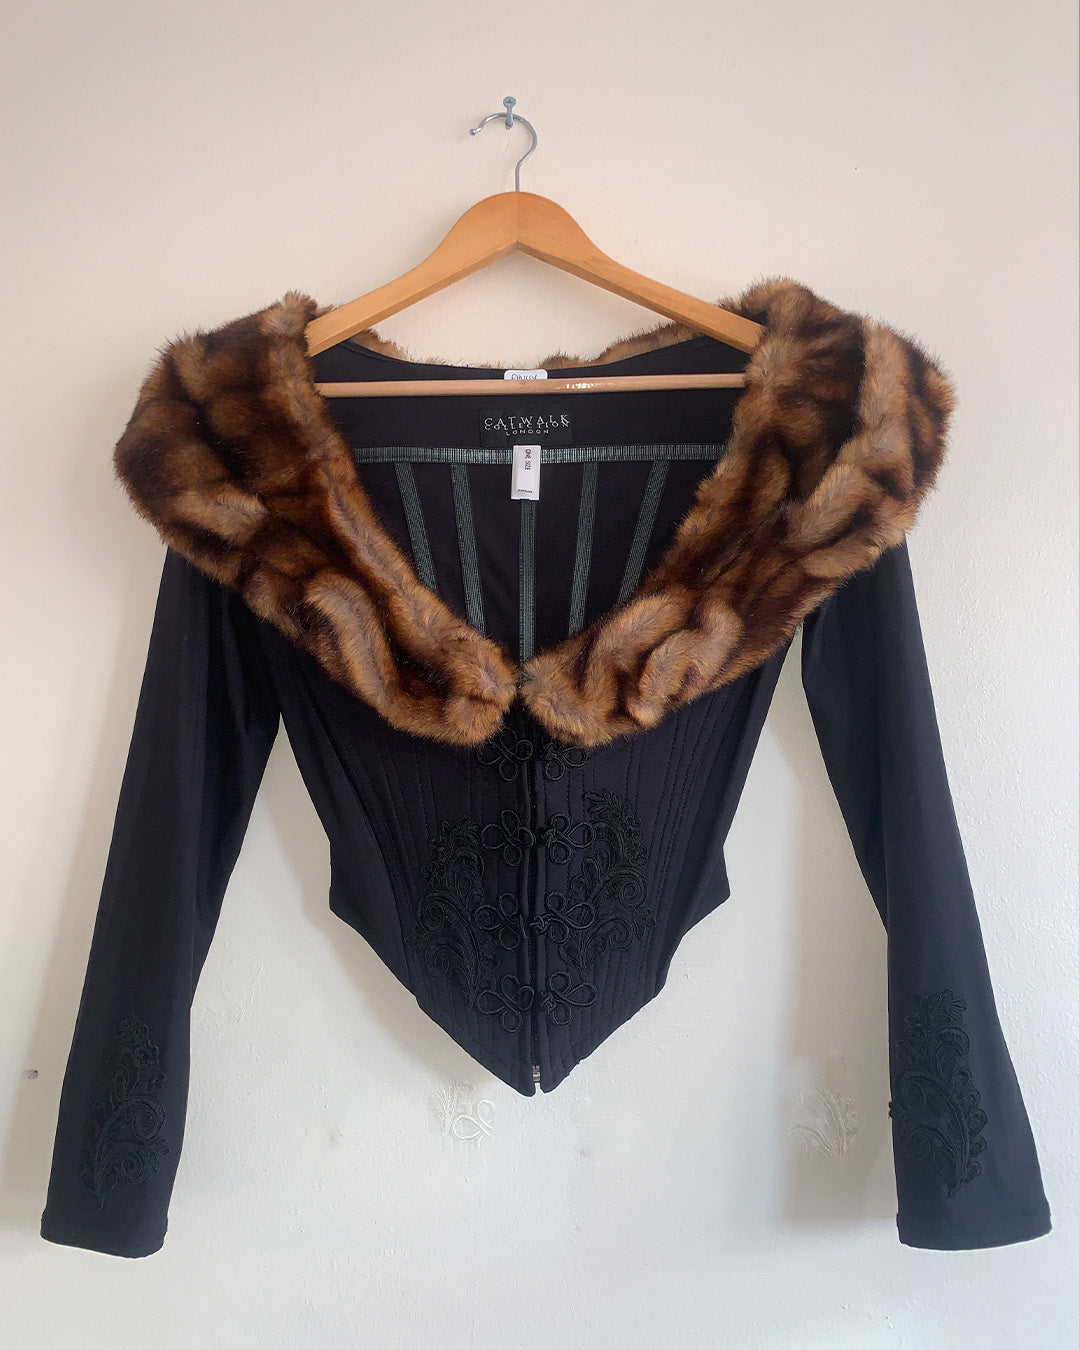 Catwalk Collection Faux Fur Black Corset Top & Skirt